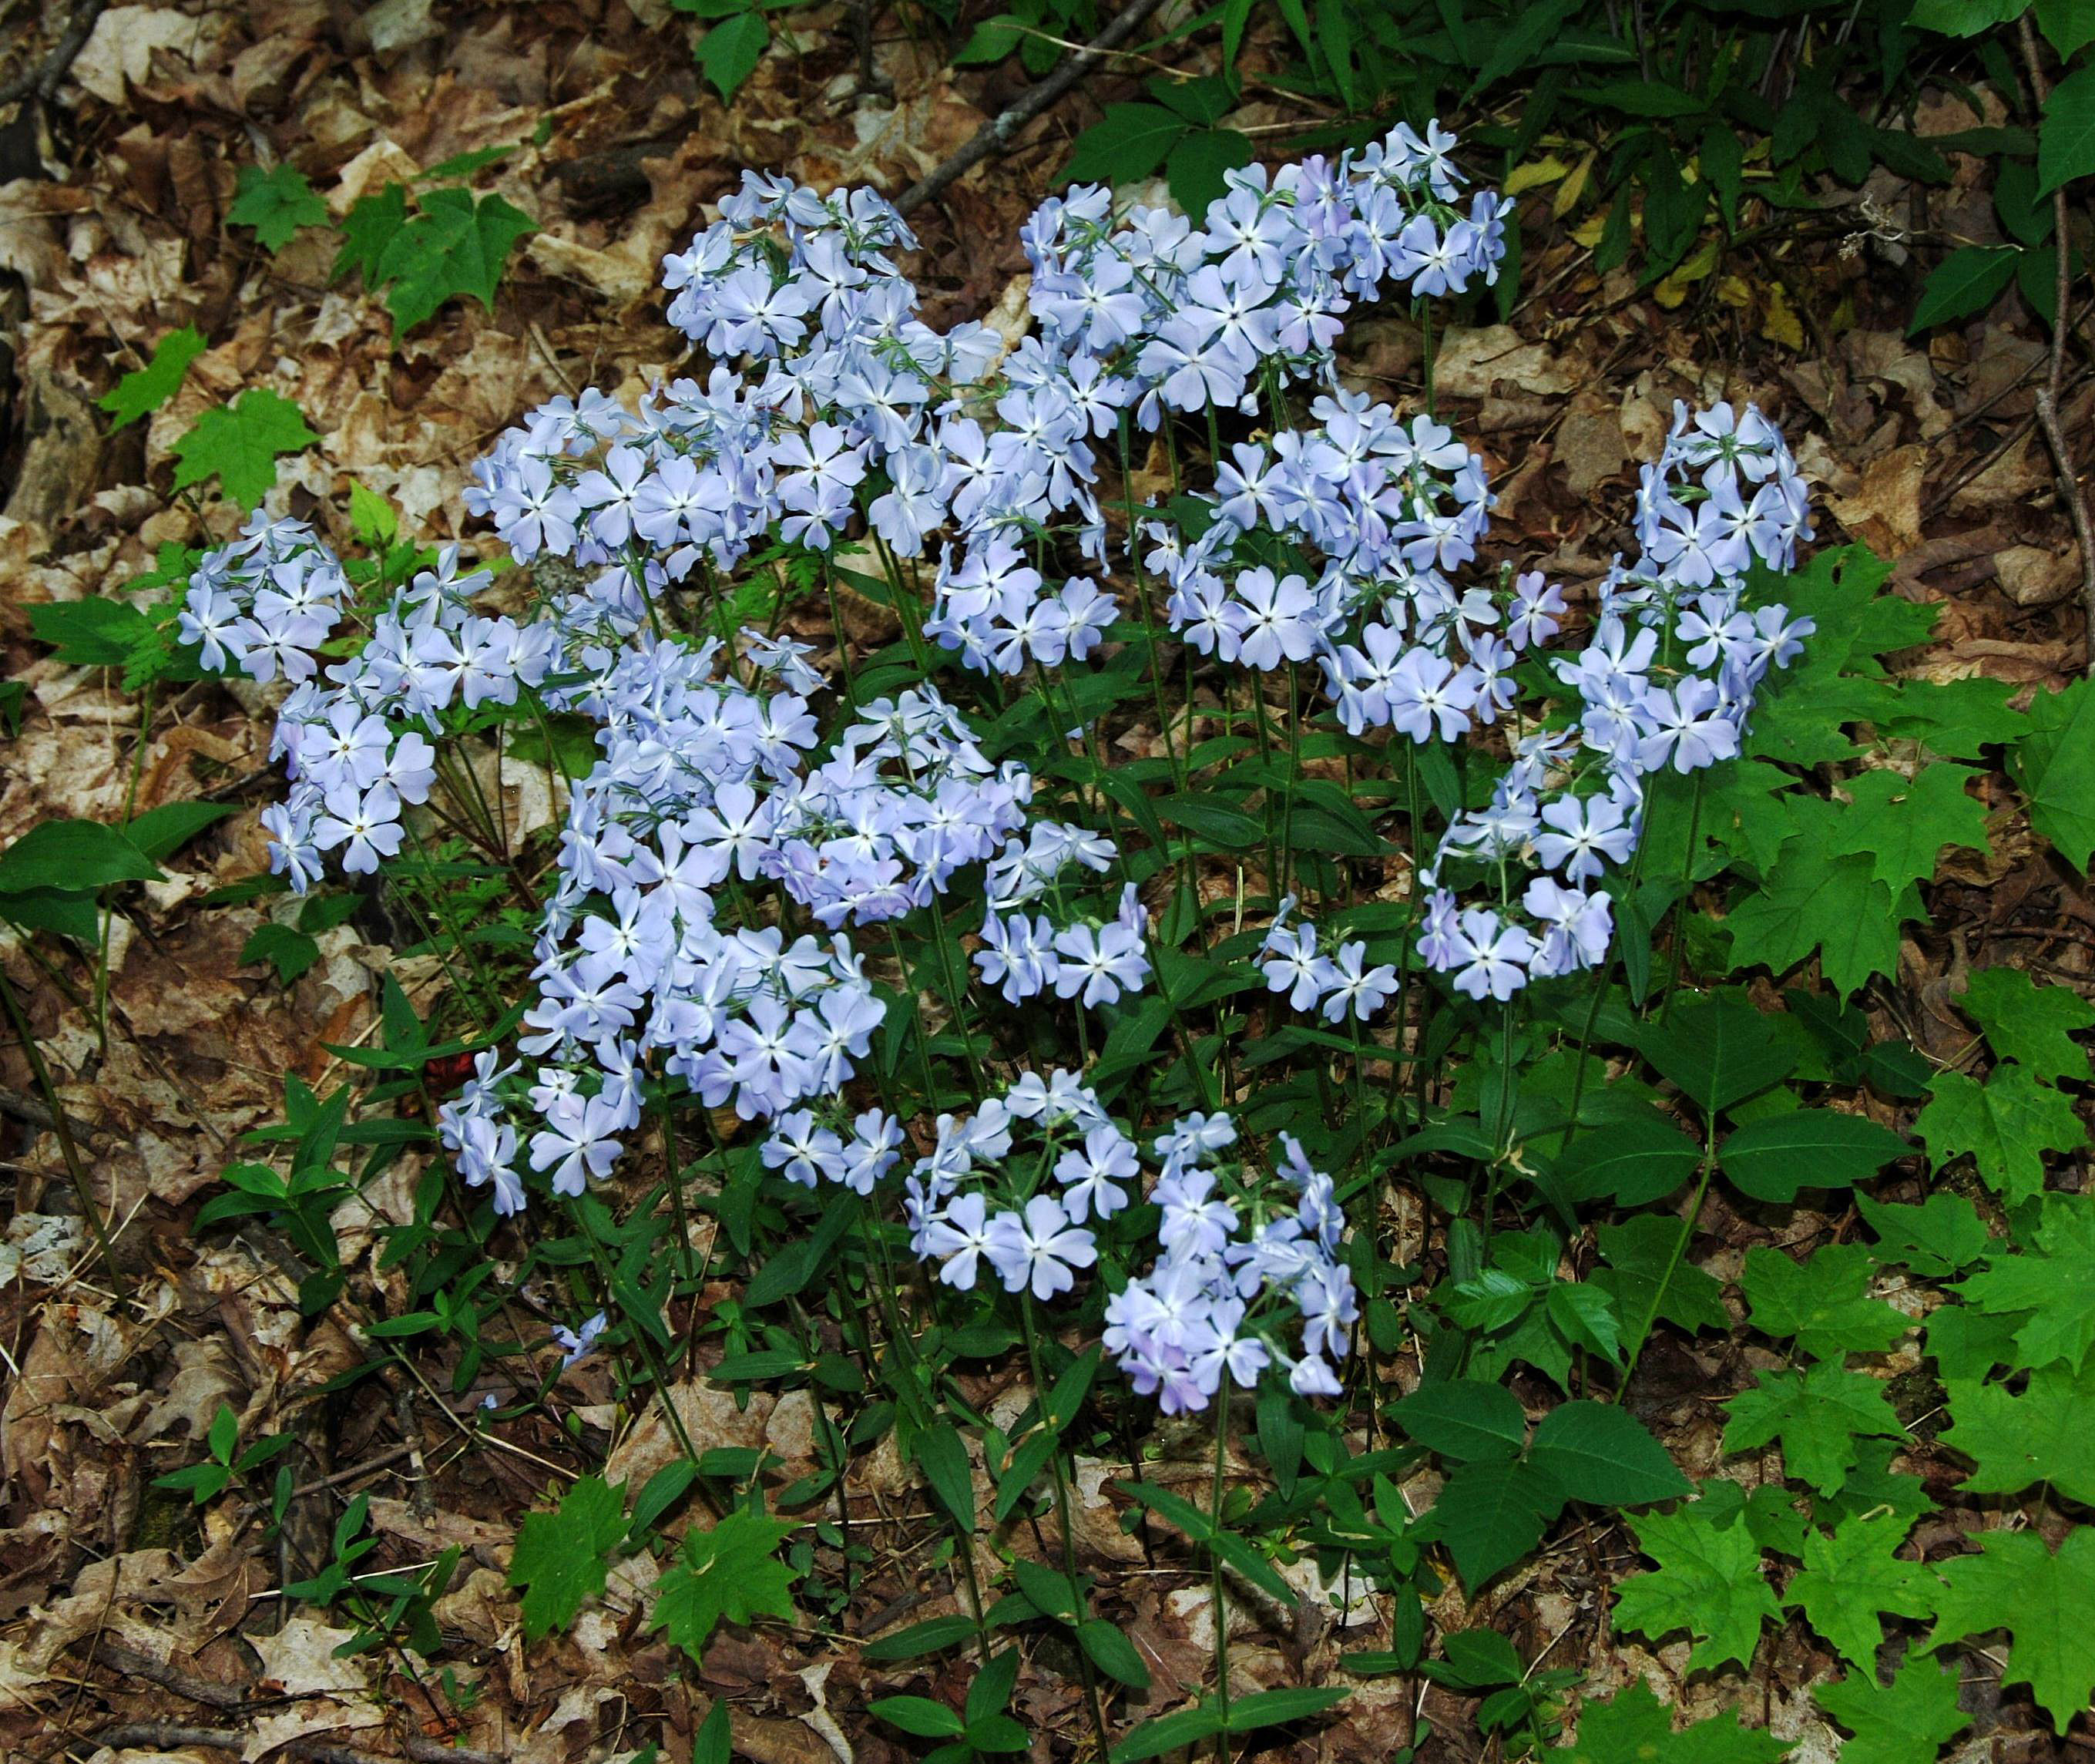 P. divaricata - plant in flower